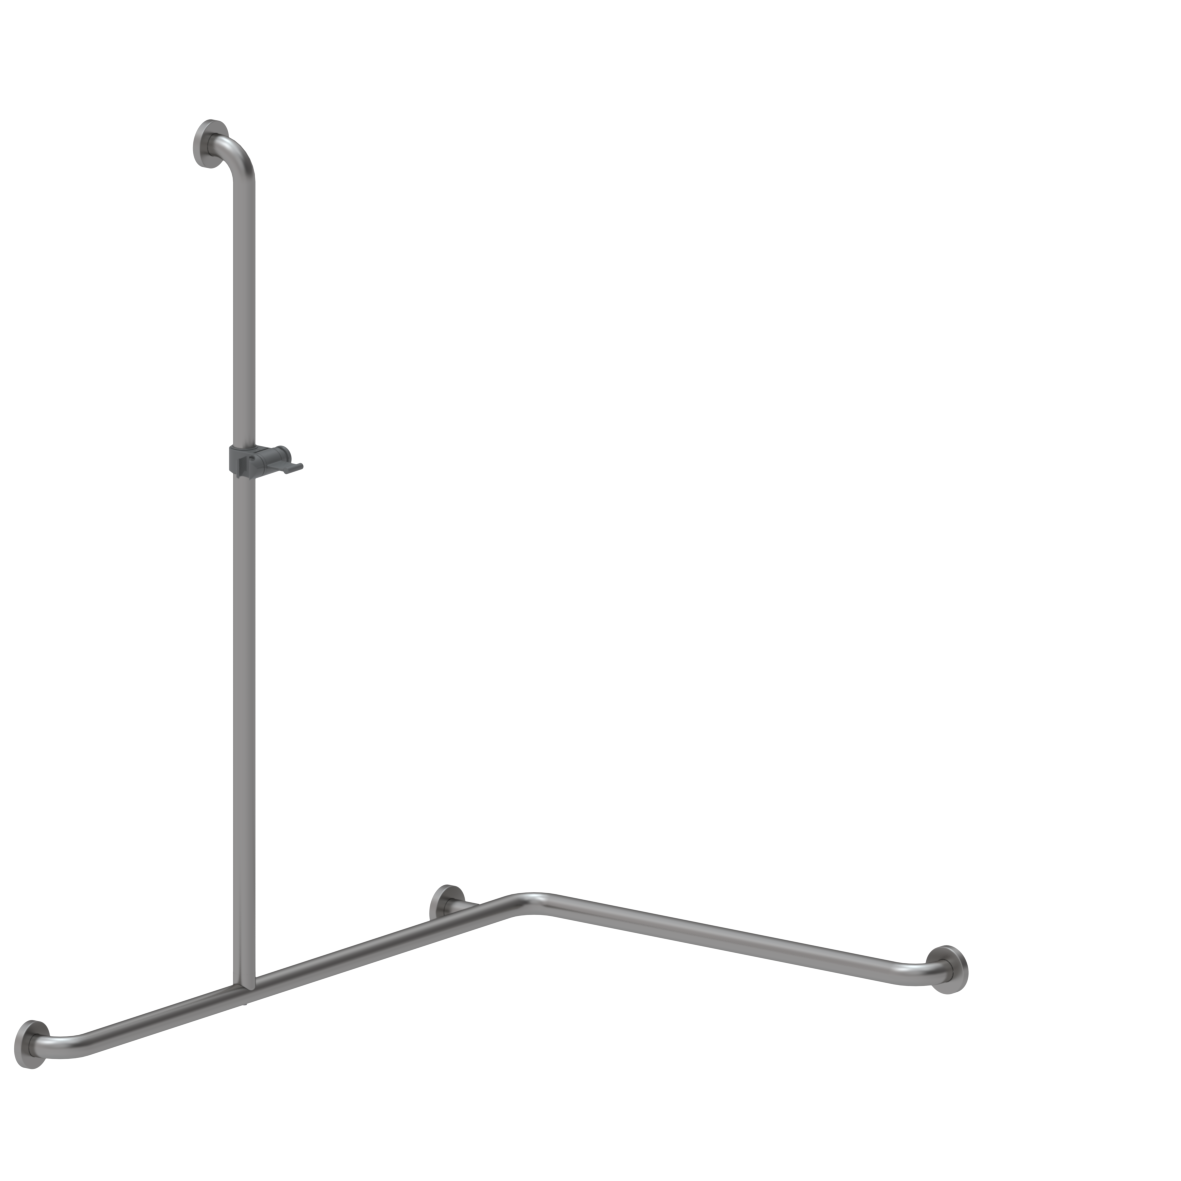 Inox Care Duschhandlauf, mit Brausehalterstange mittig, links, 750 x 1100 x 1200 mm, Edelstahl, Brausehalter in Dunkelgrau (018)